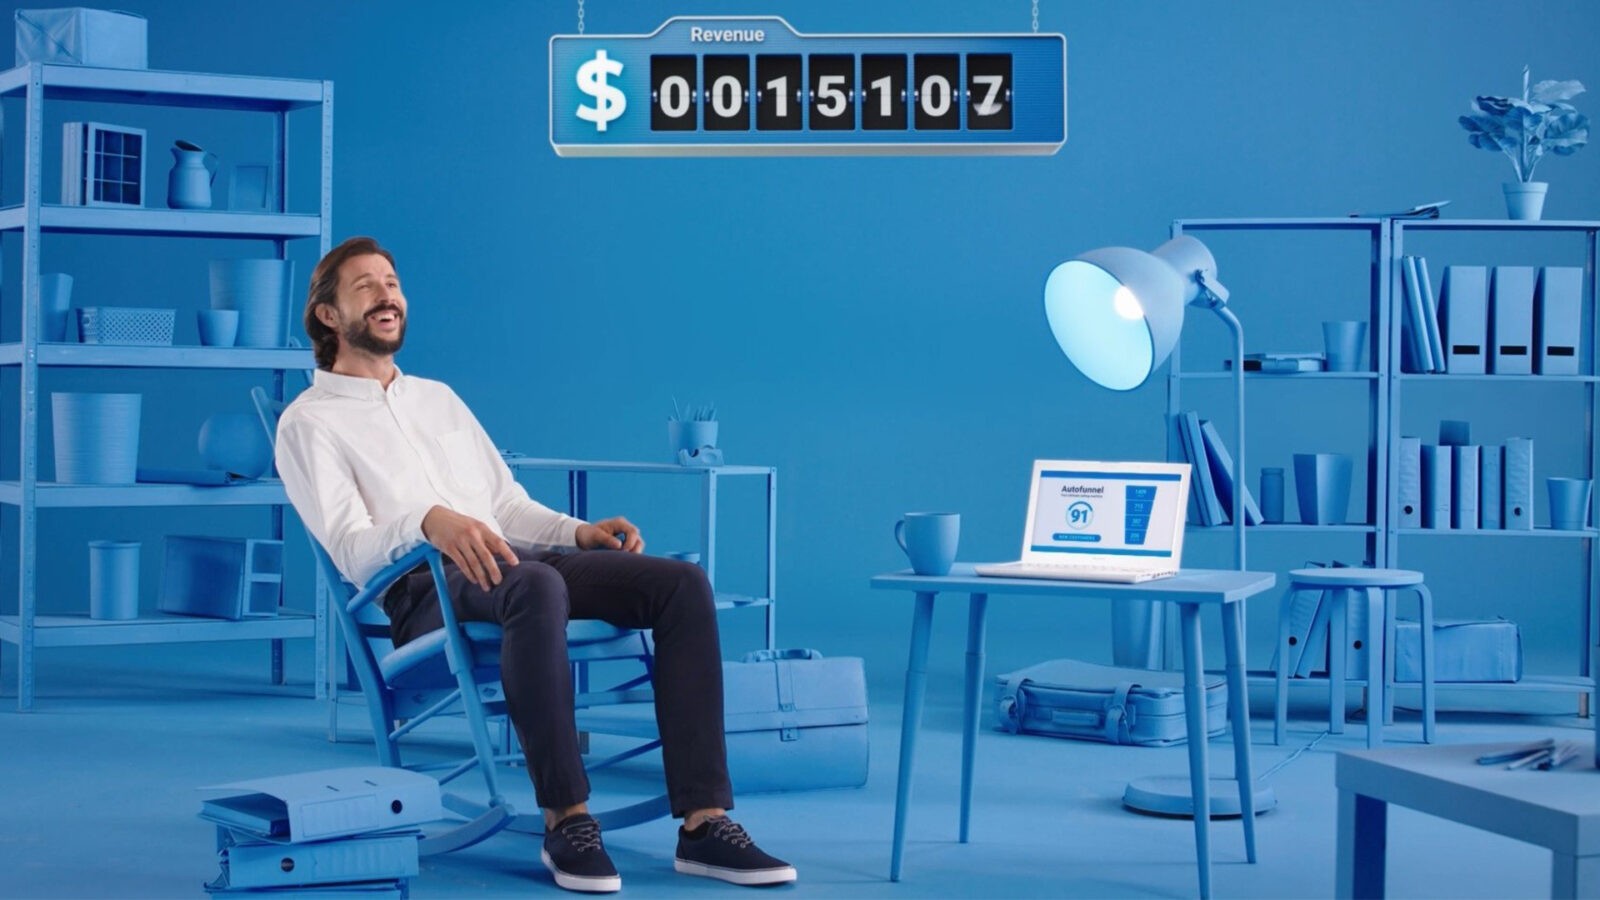 Nietypowa reklama dla Getresponse - kadr, mężczyzna siedzi na krześle w całkowicie niebieskim pomieszczeniu